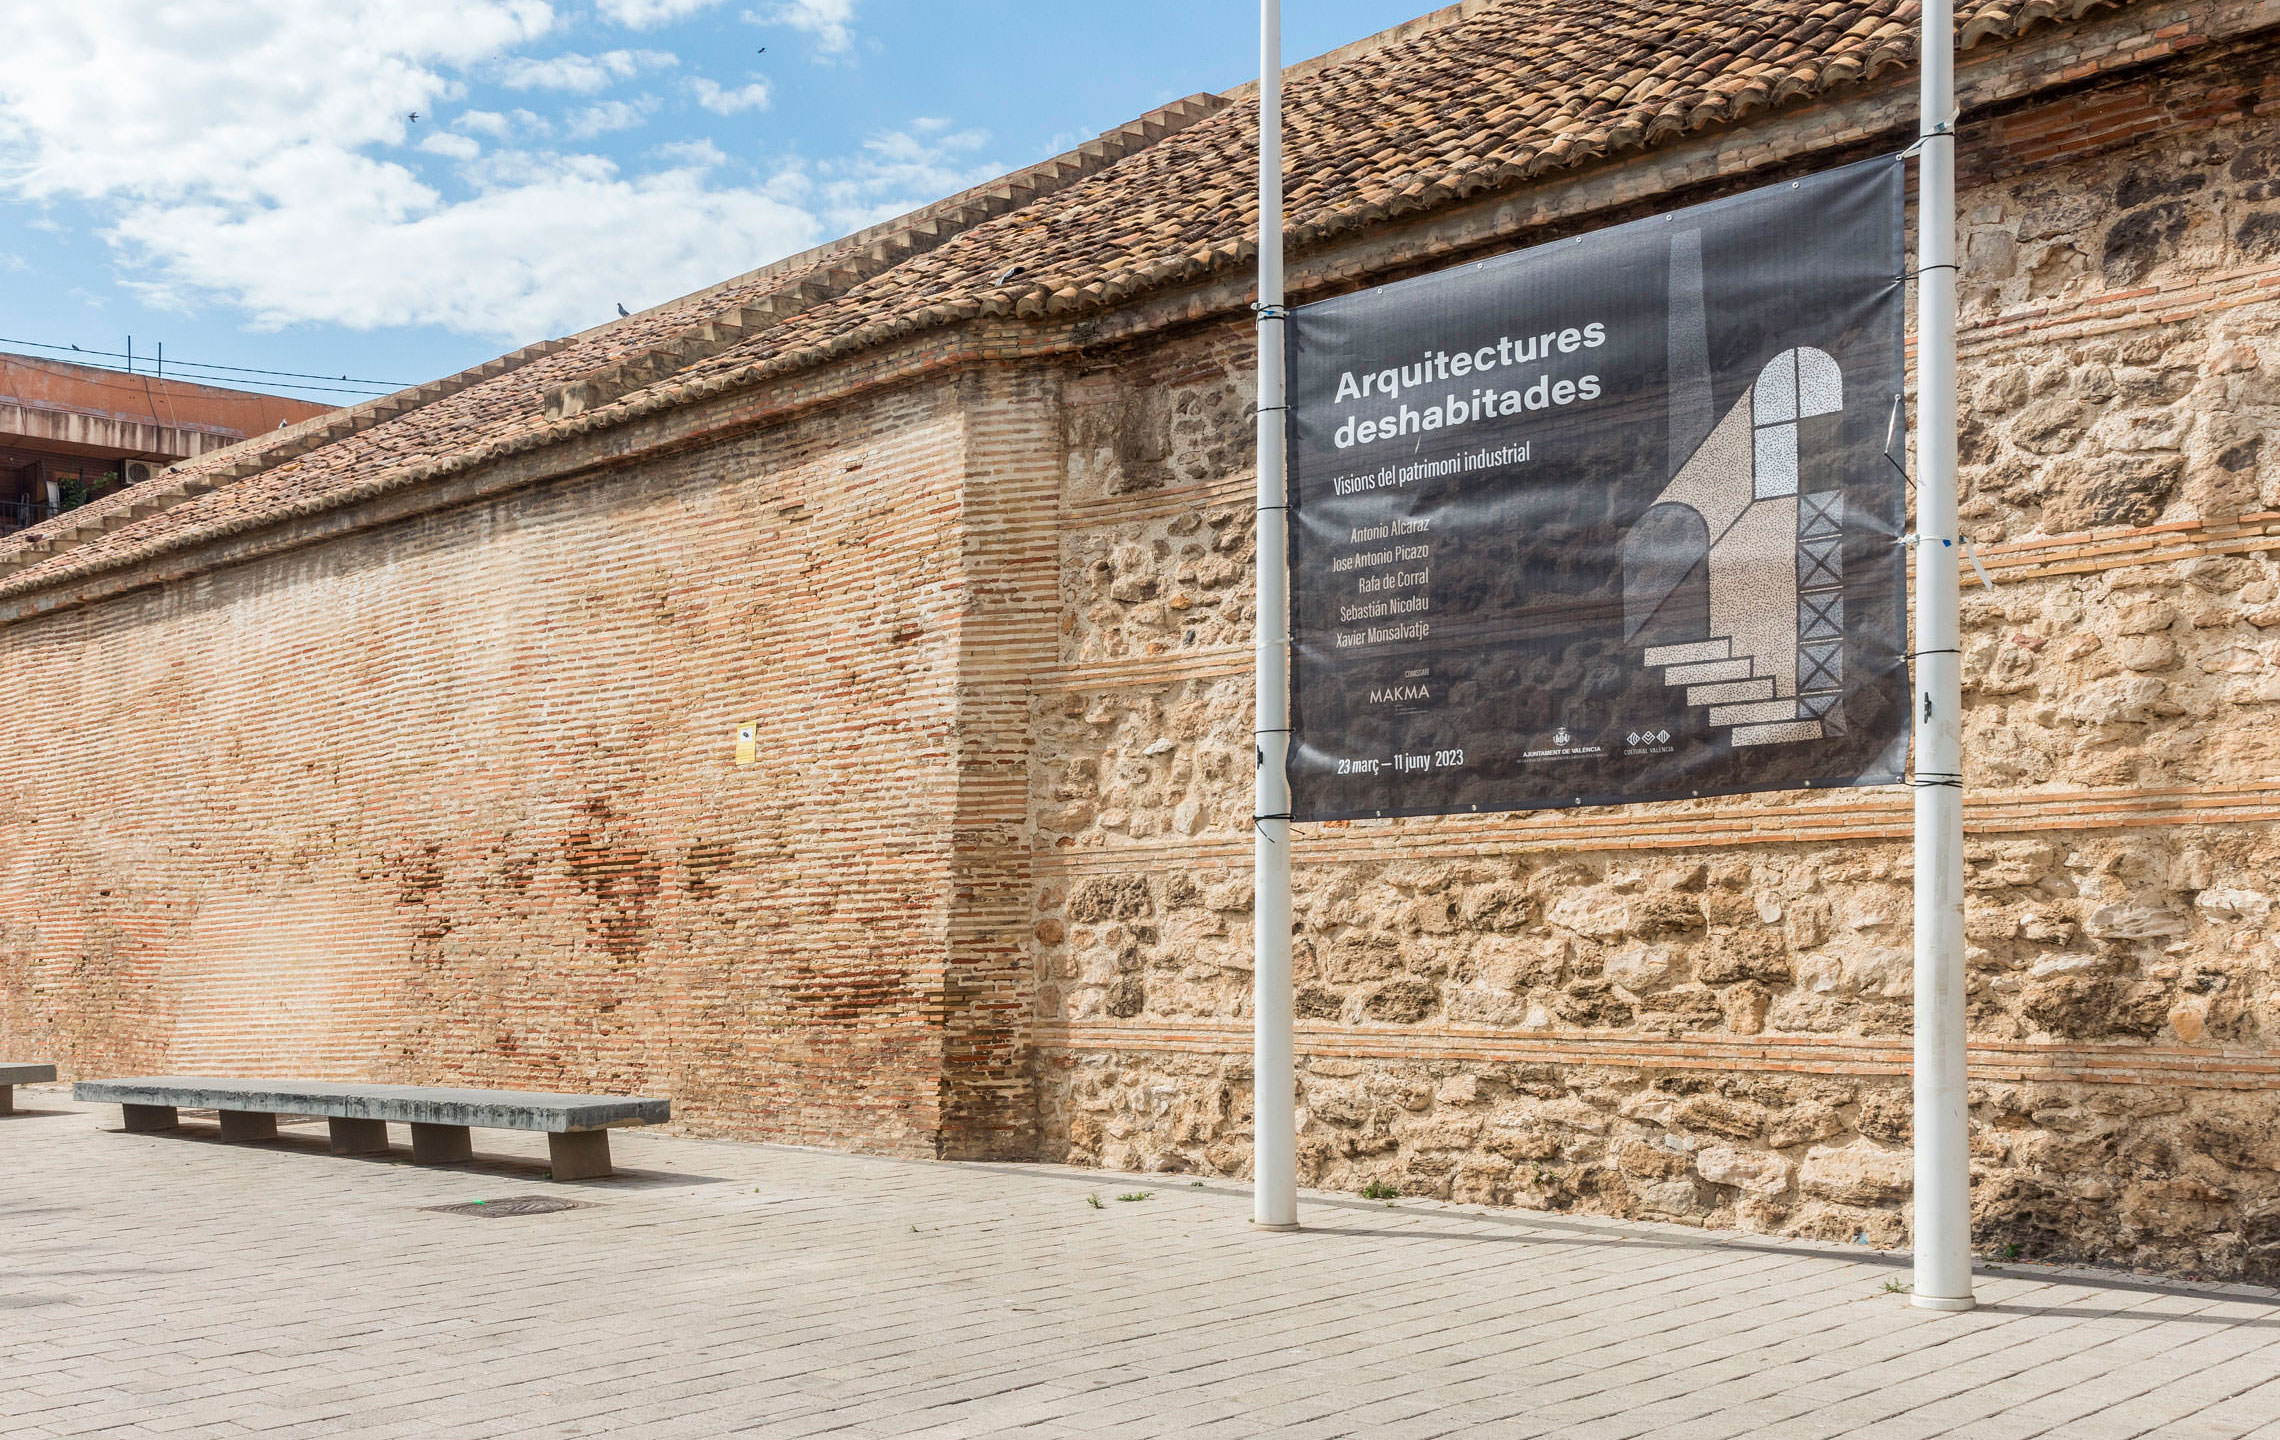 Lona microperforada que anuncia la exposición, ubicada en el exterior de las Atarazanas del Grao